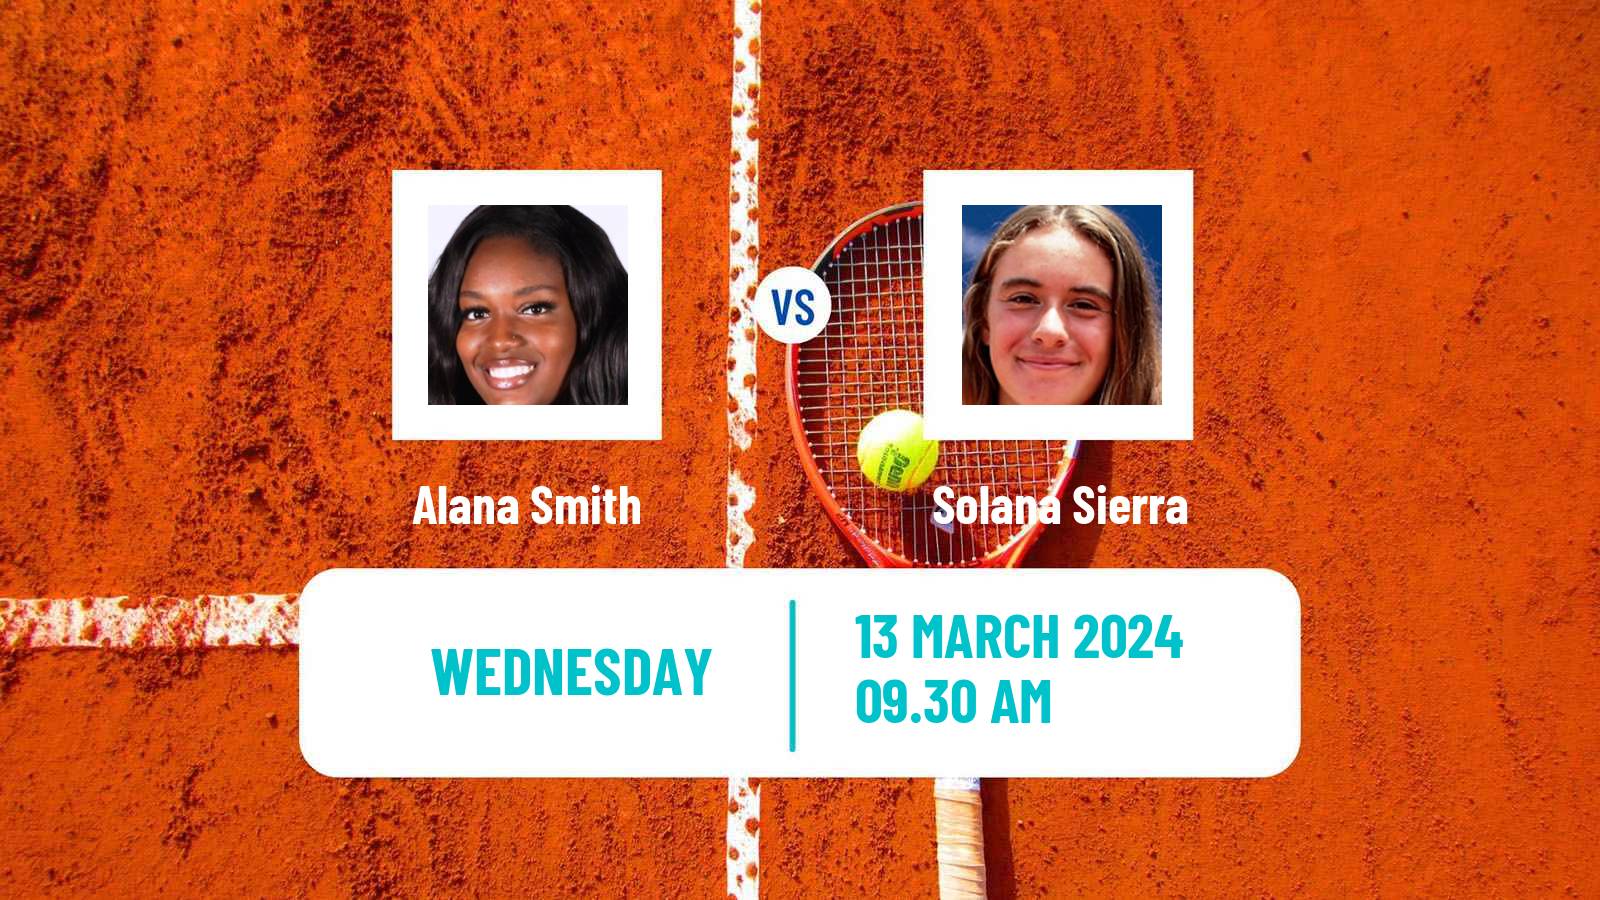 Tennis ITF W35 Santo Domingo 2 Women Alana Smith - Solana Sierra